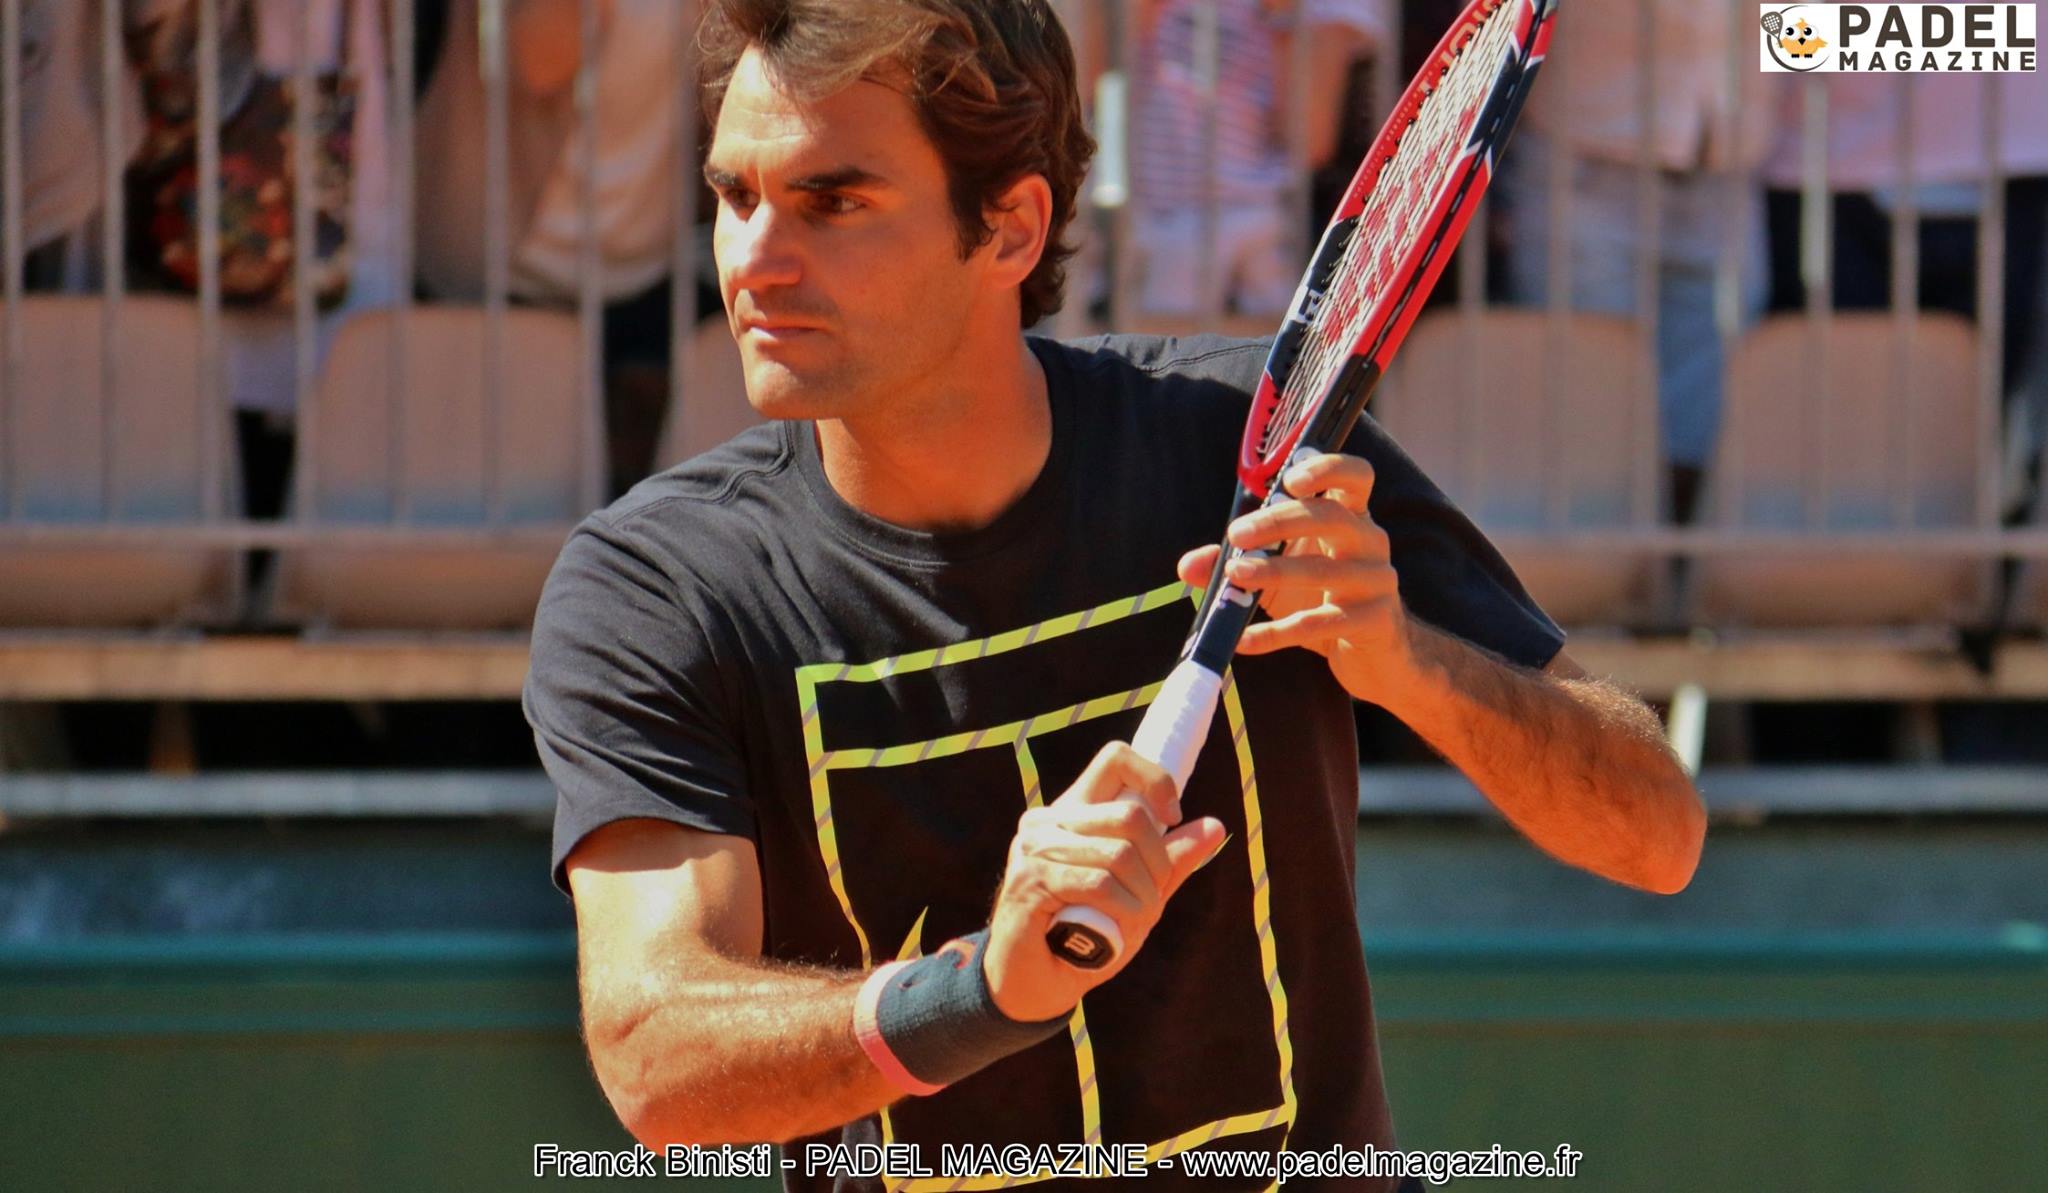 Roger Federer, przyszły wielki du padel ?